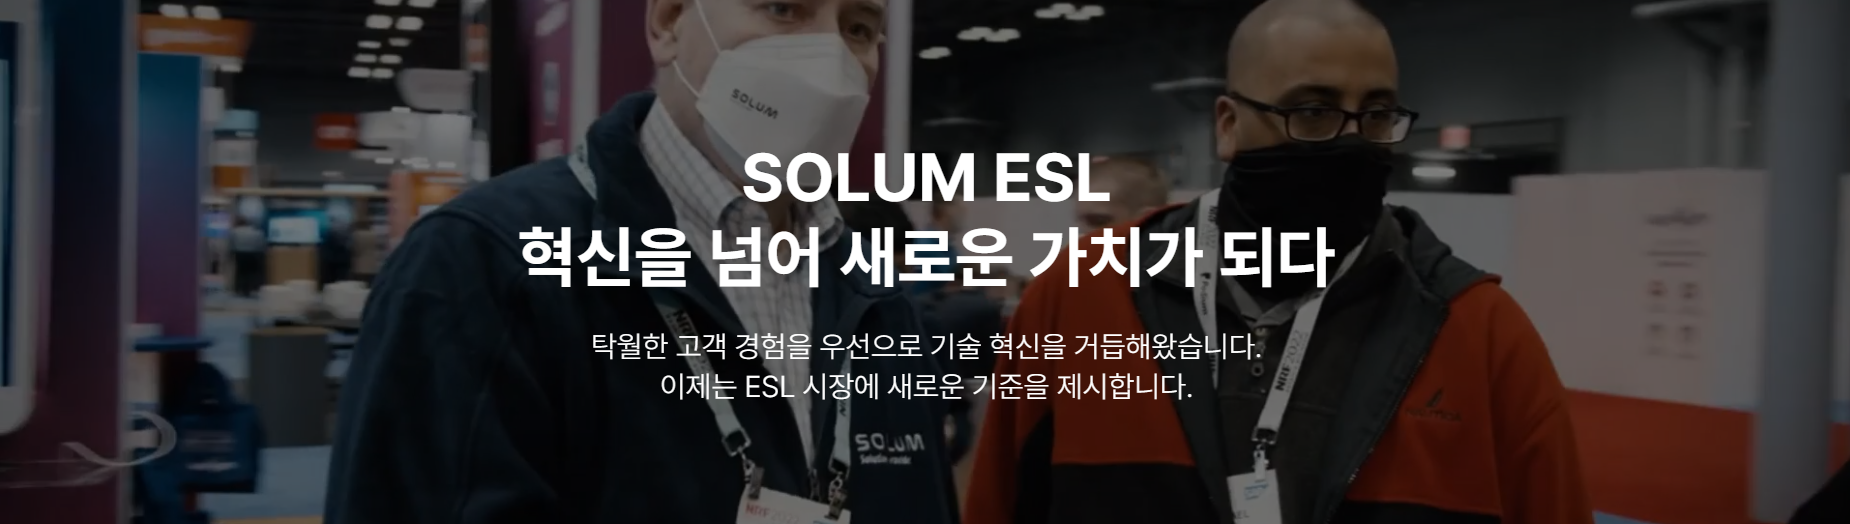 솔루엠 ESL 상품/서비스 기획 및 UX기획